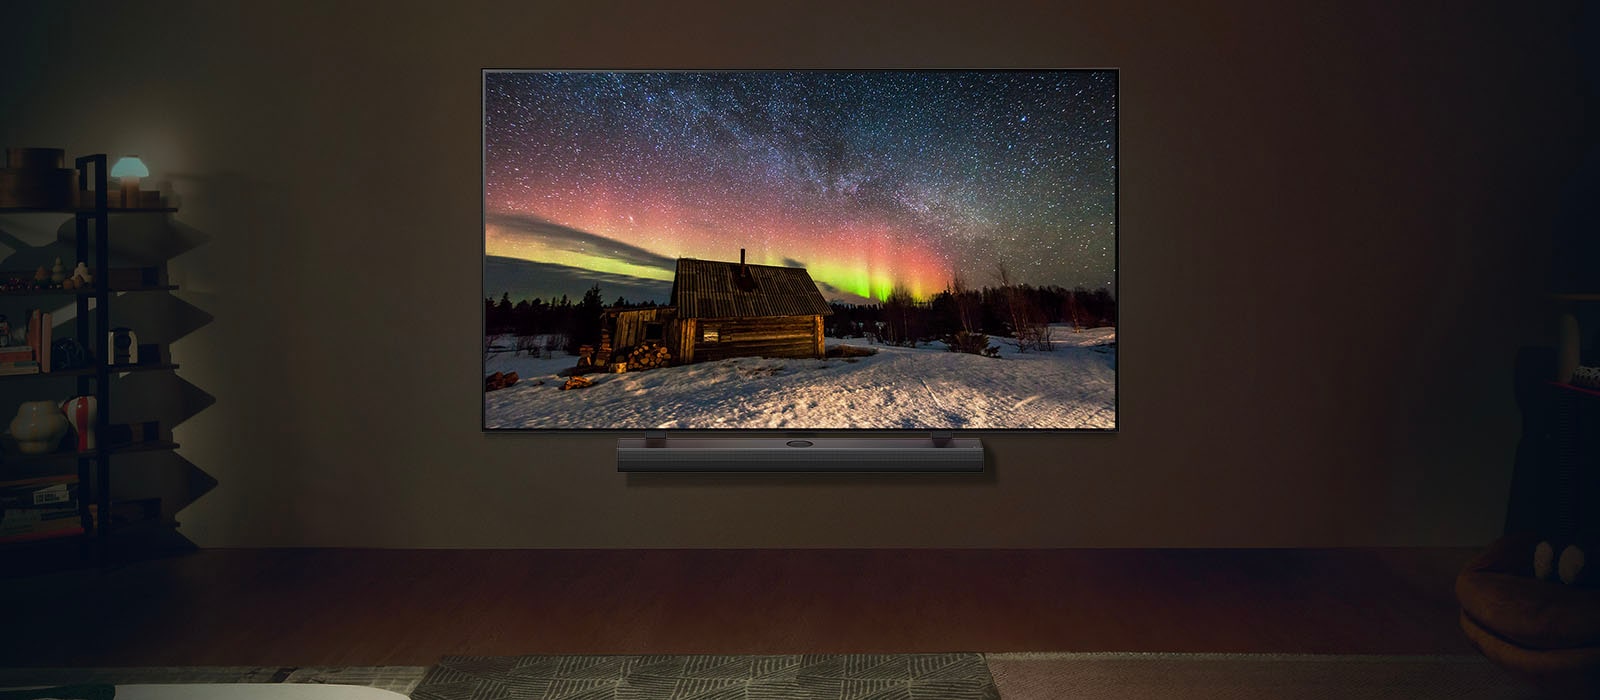 LG TV und LG Soundbar in einem modernen Wohnraum bei Nacht. Das Bild des Polarlichts wird auf dem Bildschirm mit der idealen Helligkeitsstufe angezeigt.